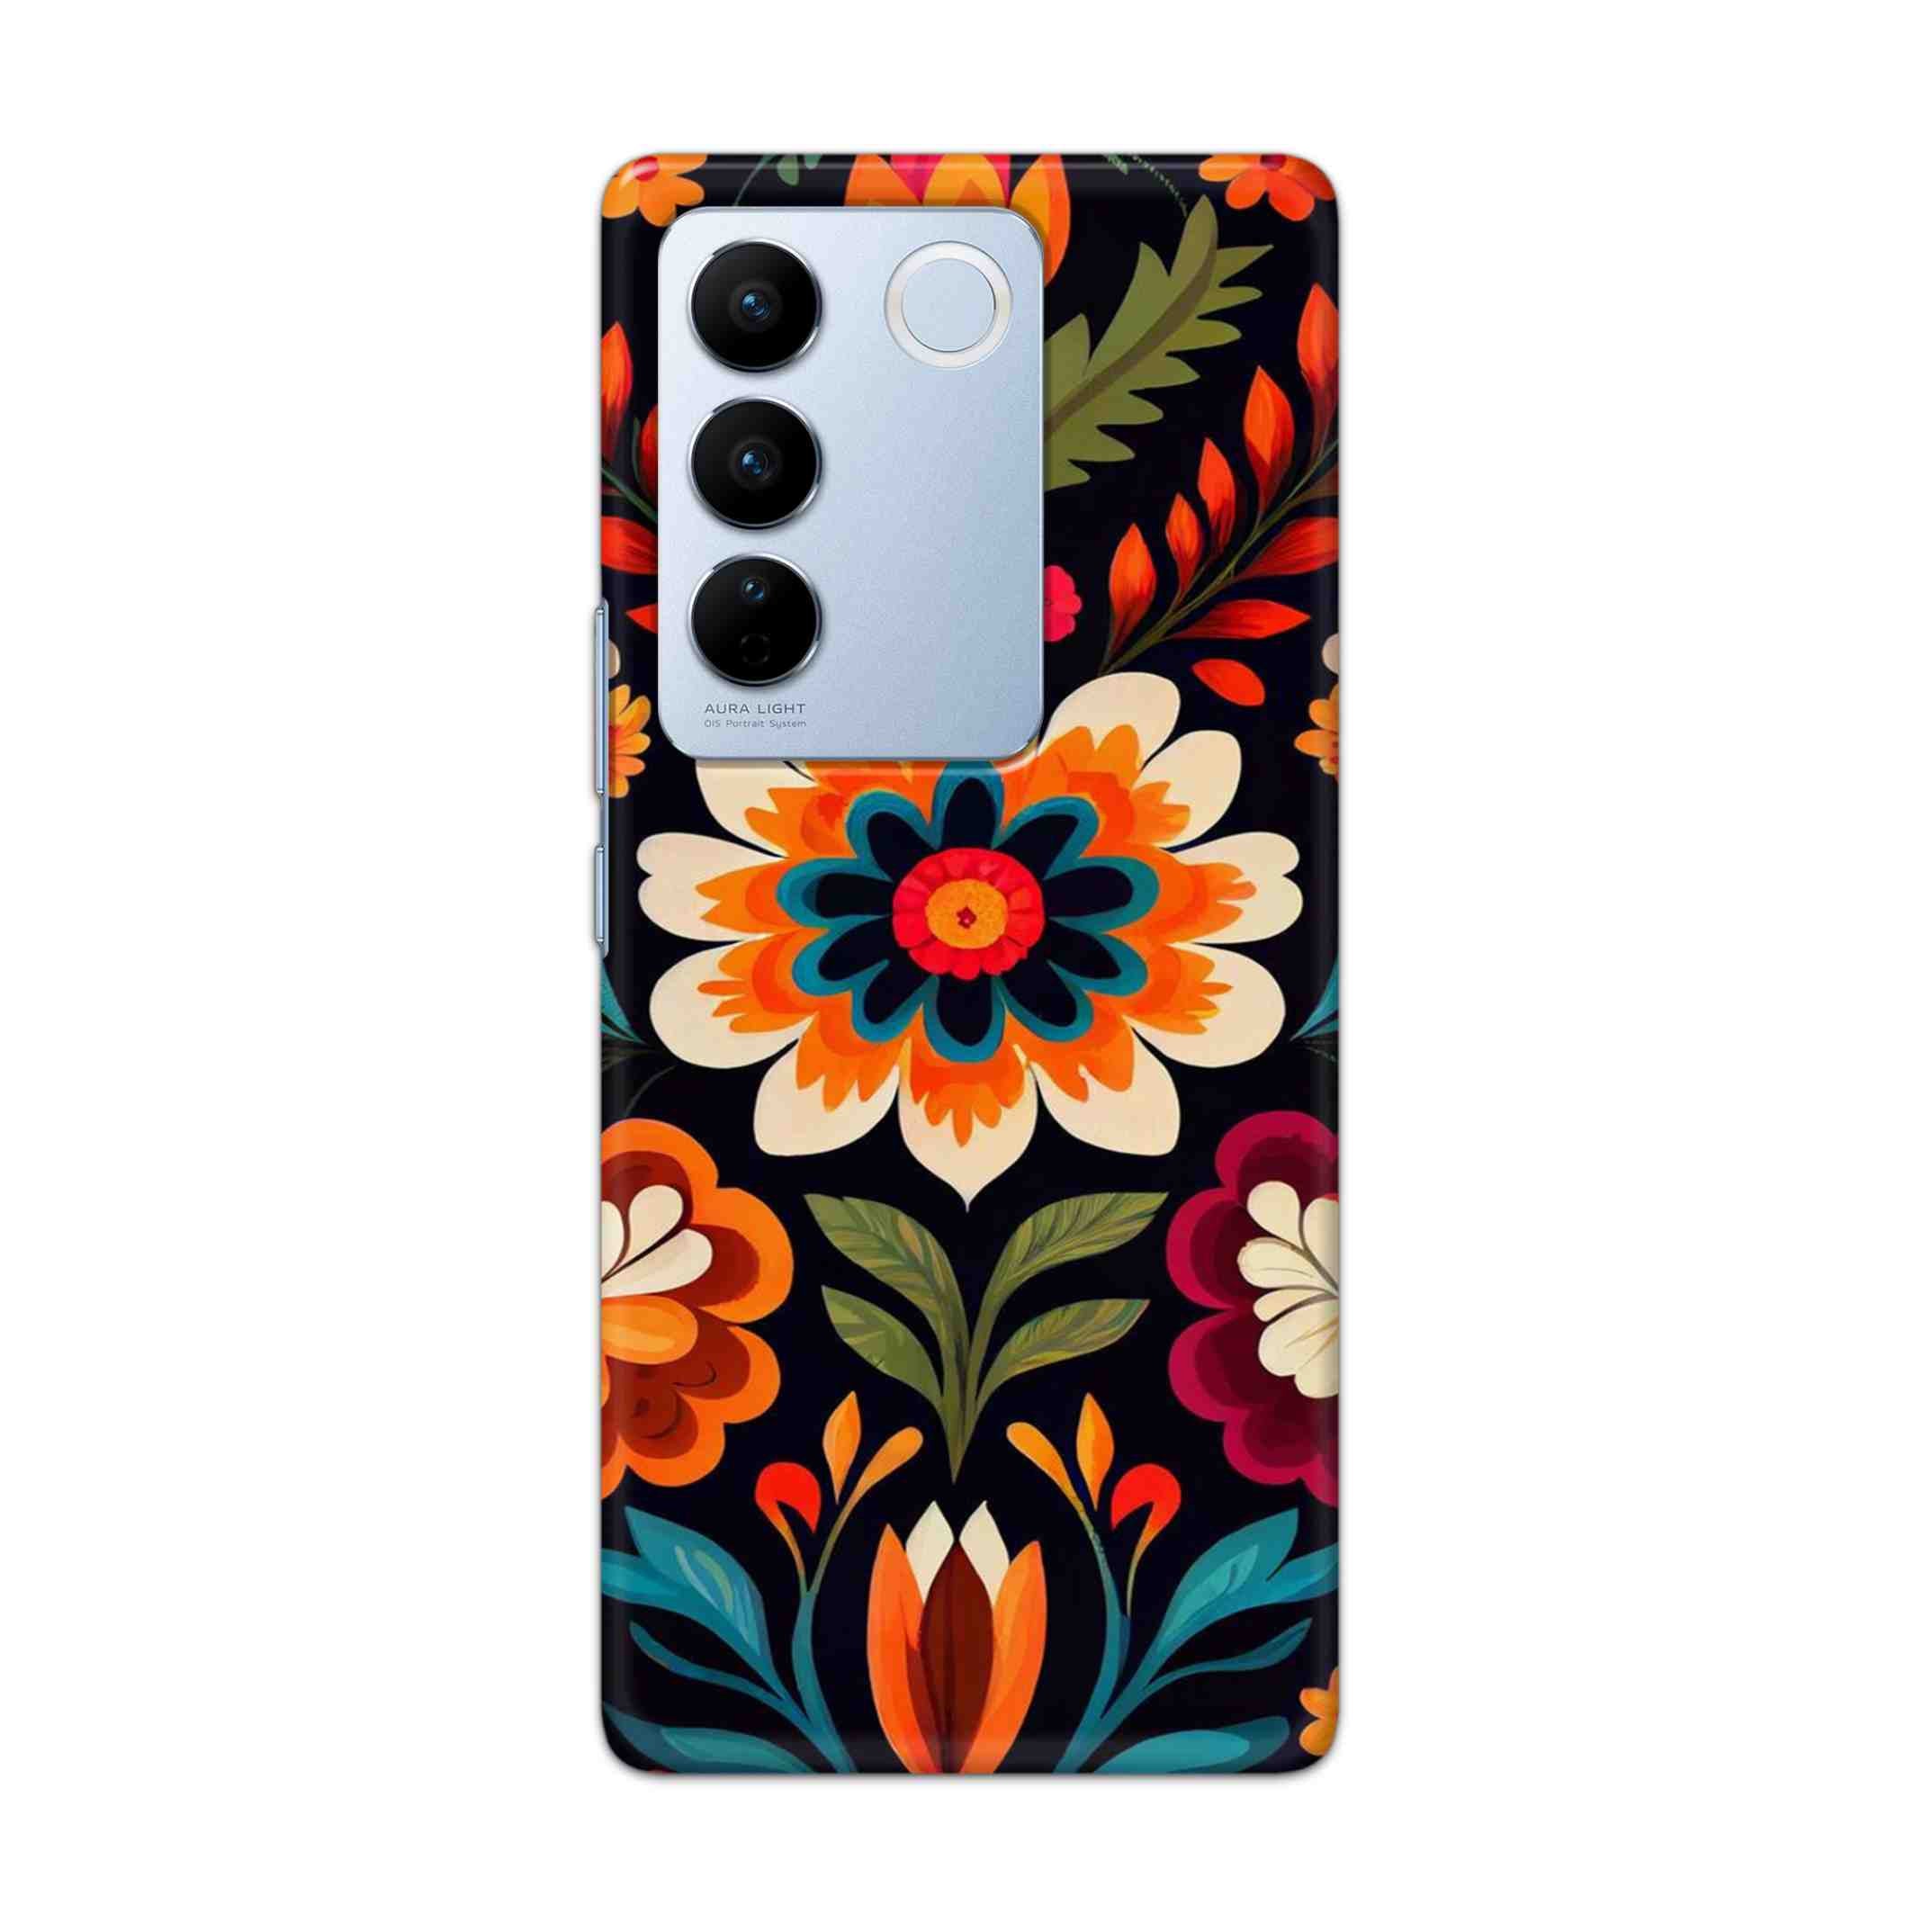 Buy Flower Hard Back Mobile Phone Case Cover For Vivo V27 Online